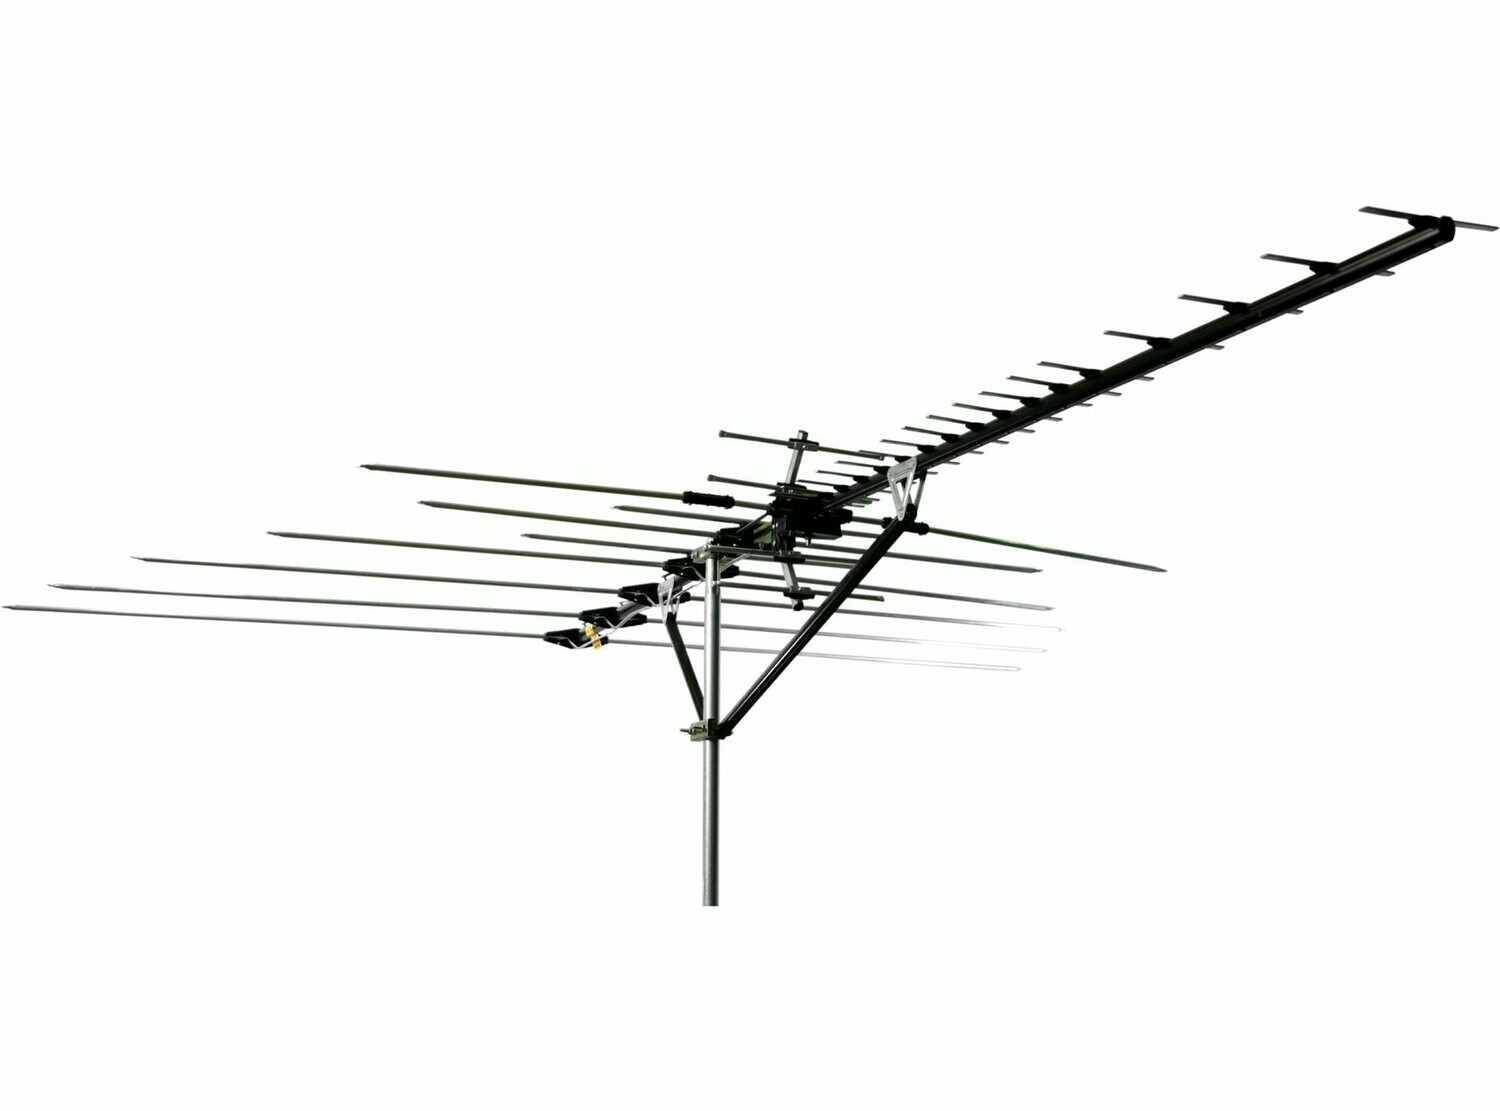 Channel Master Masterpiece 100 HDTV Antenna with Standard Installation*